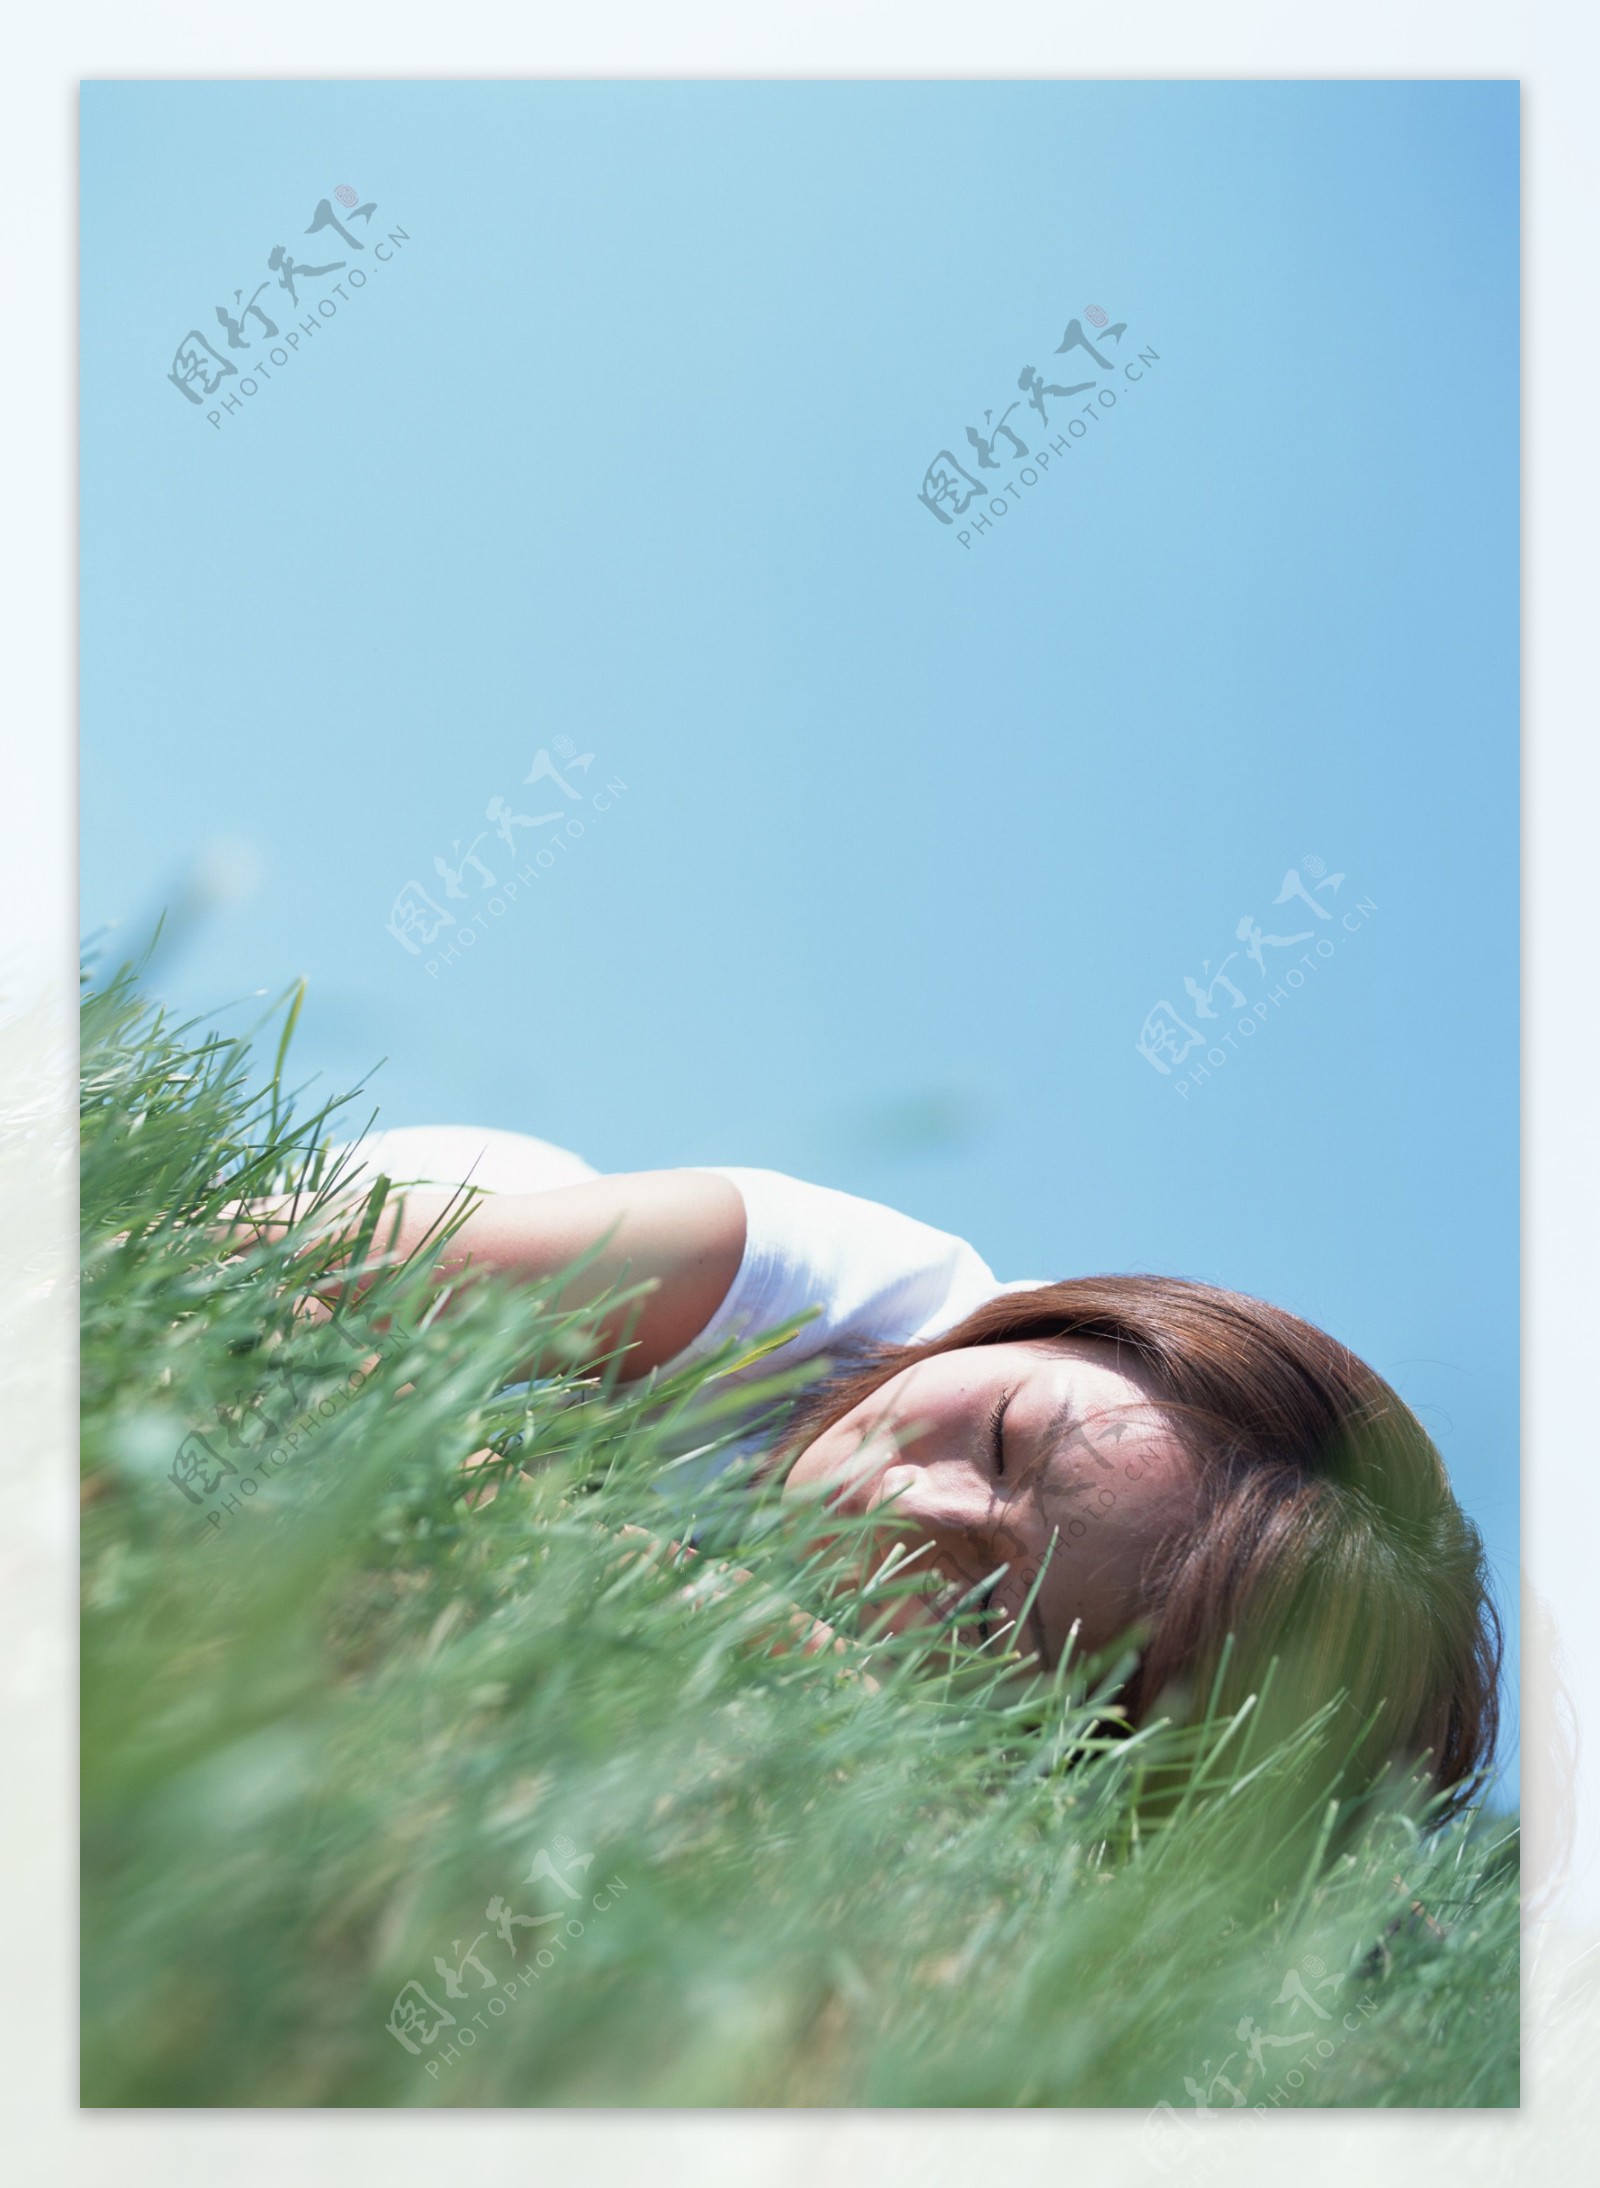 趴在草地上睡觉的美女图片